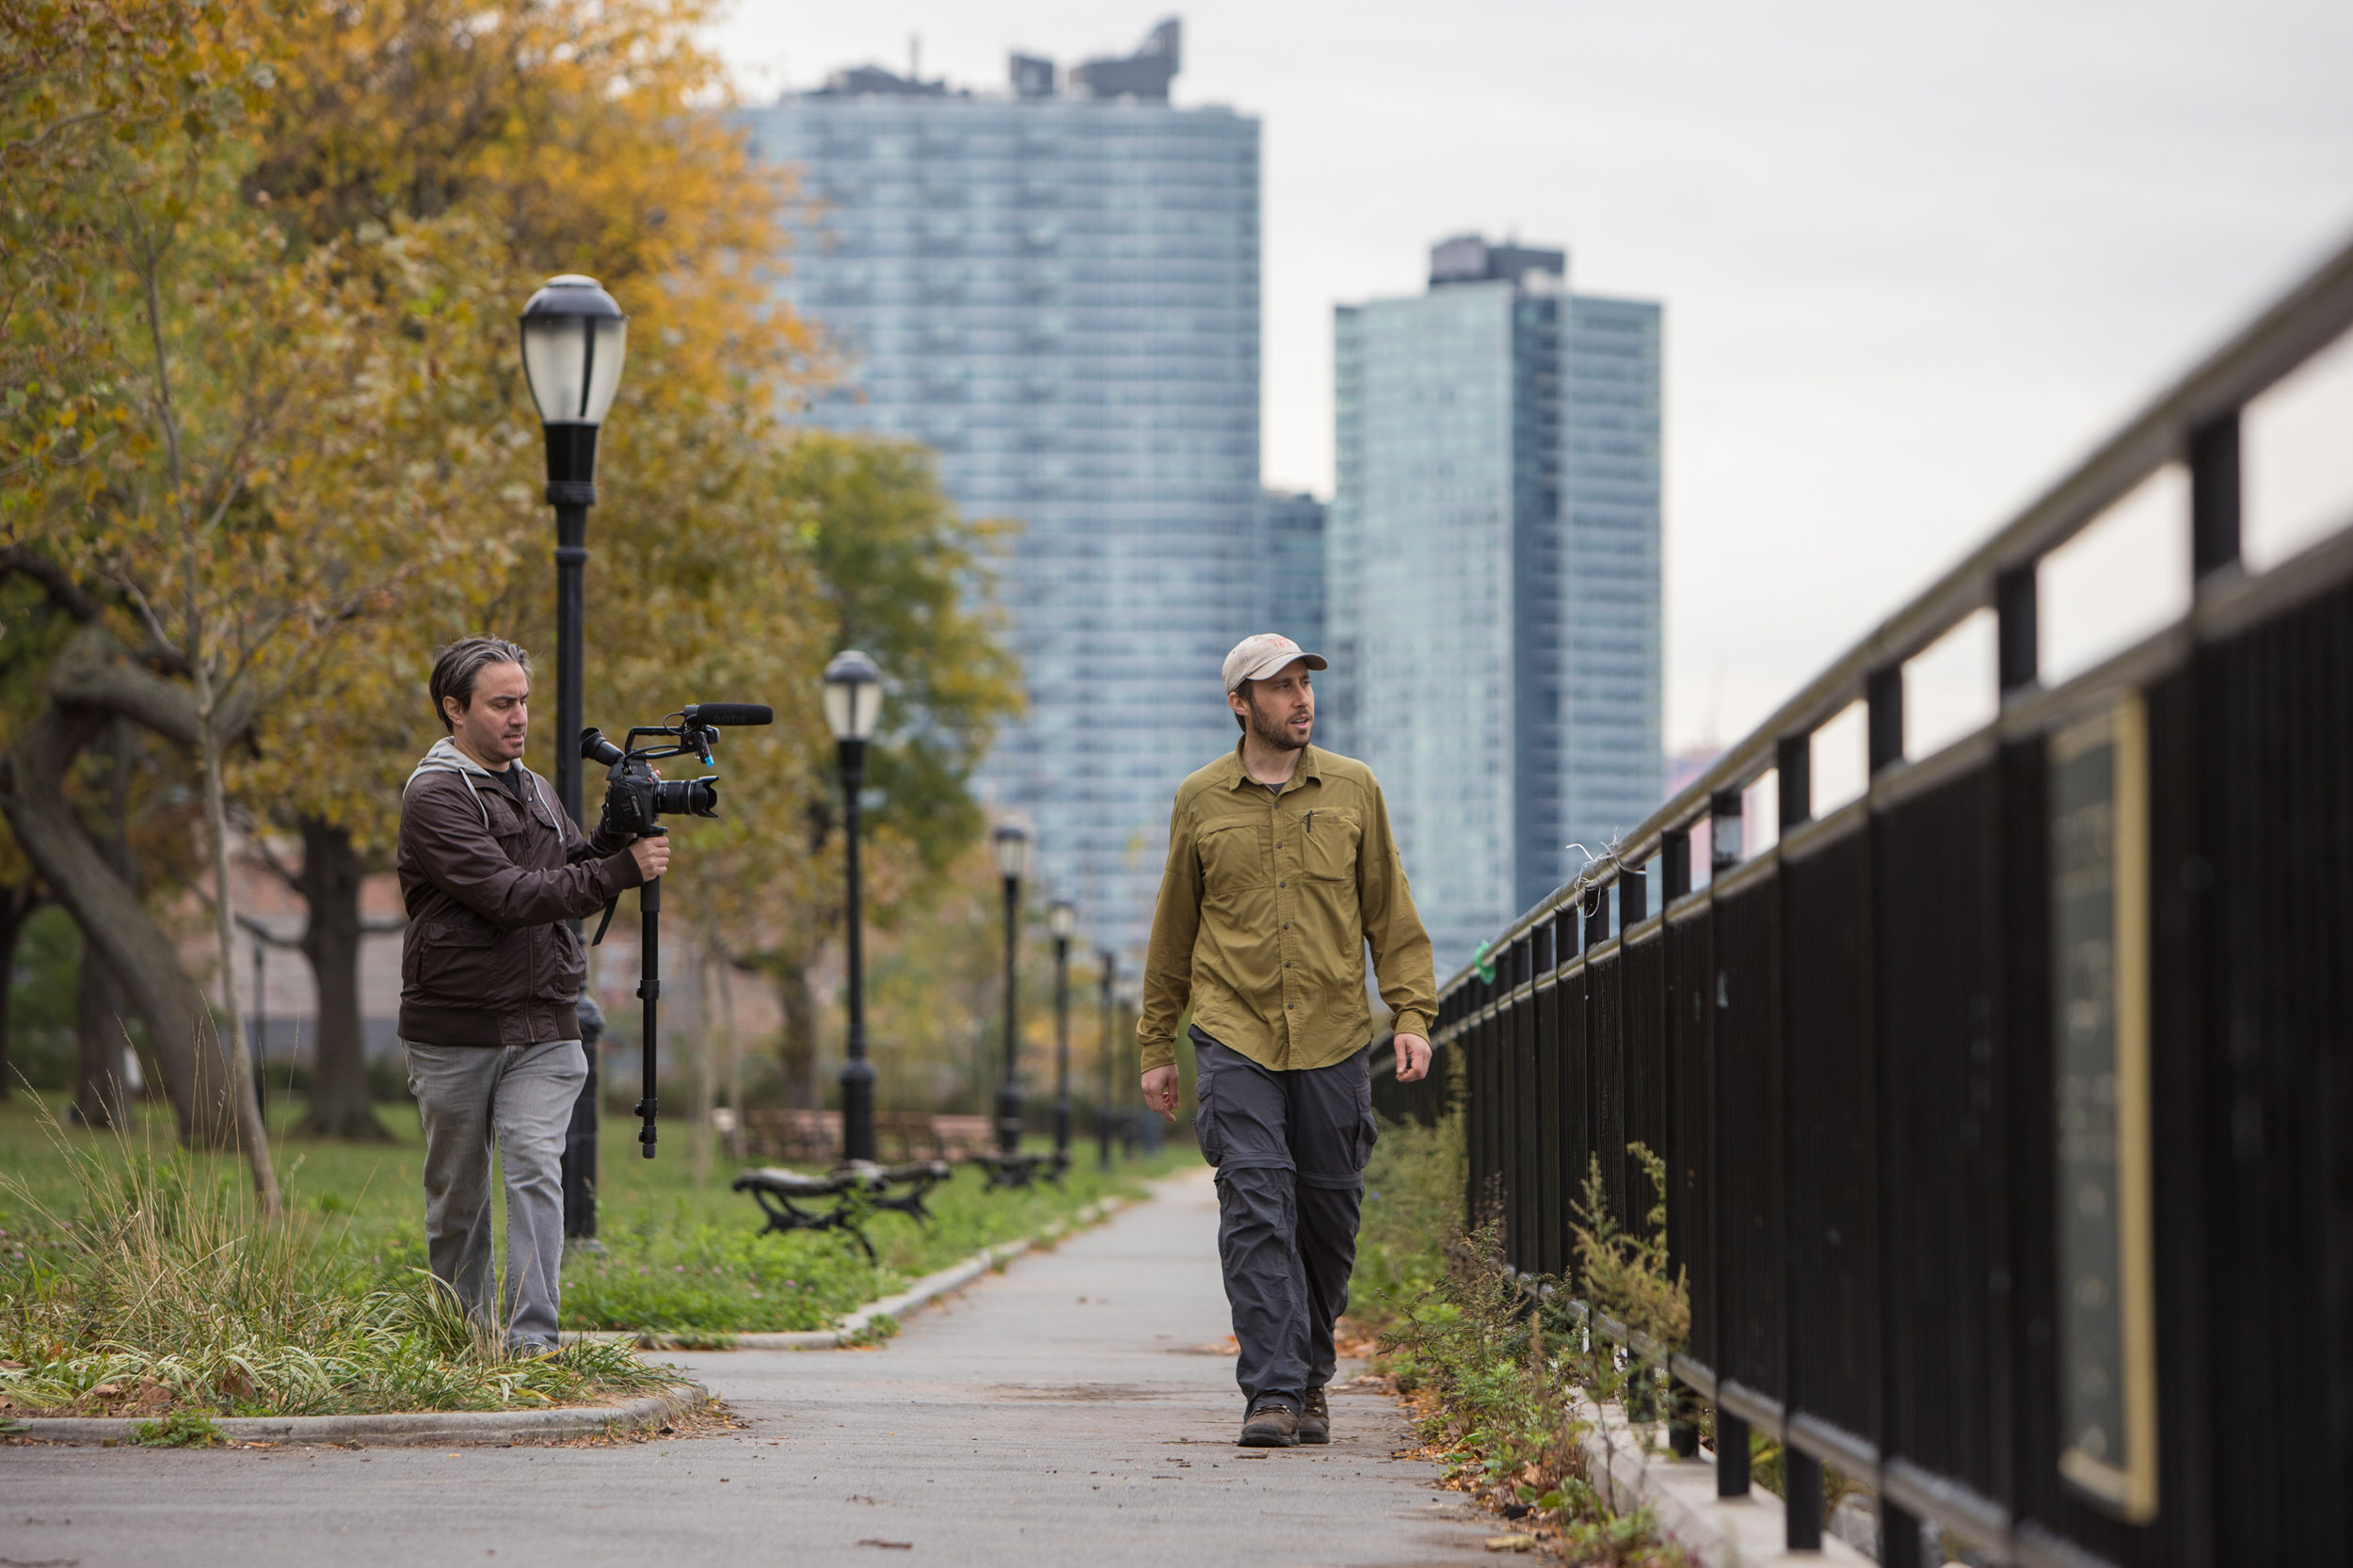 Matt Green walks in Long Island City, Queens with a camera man following him